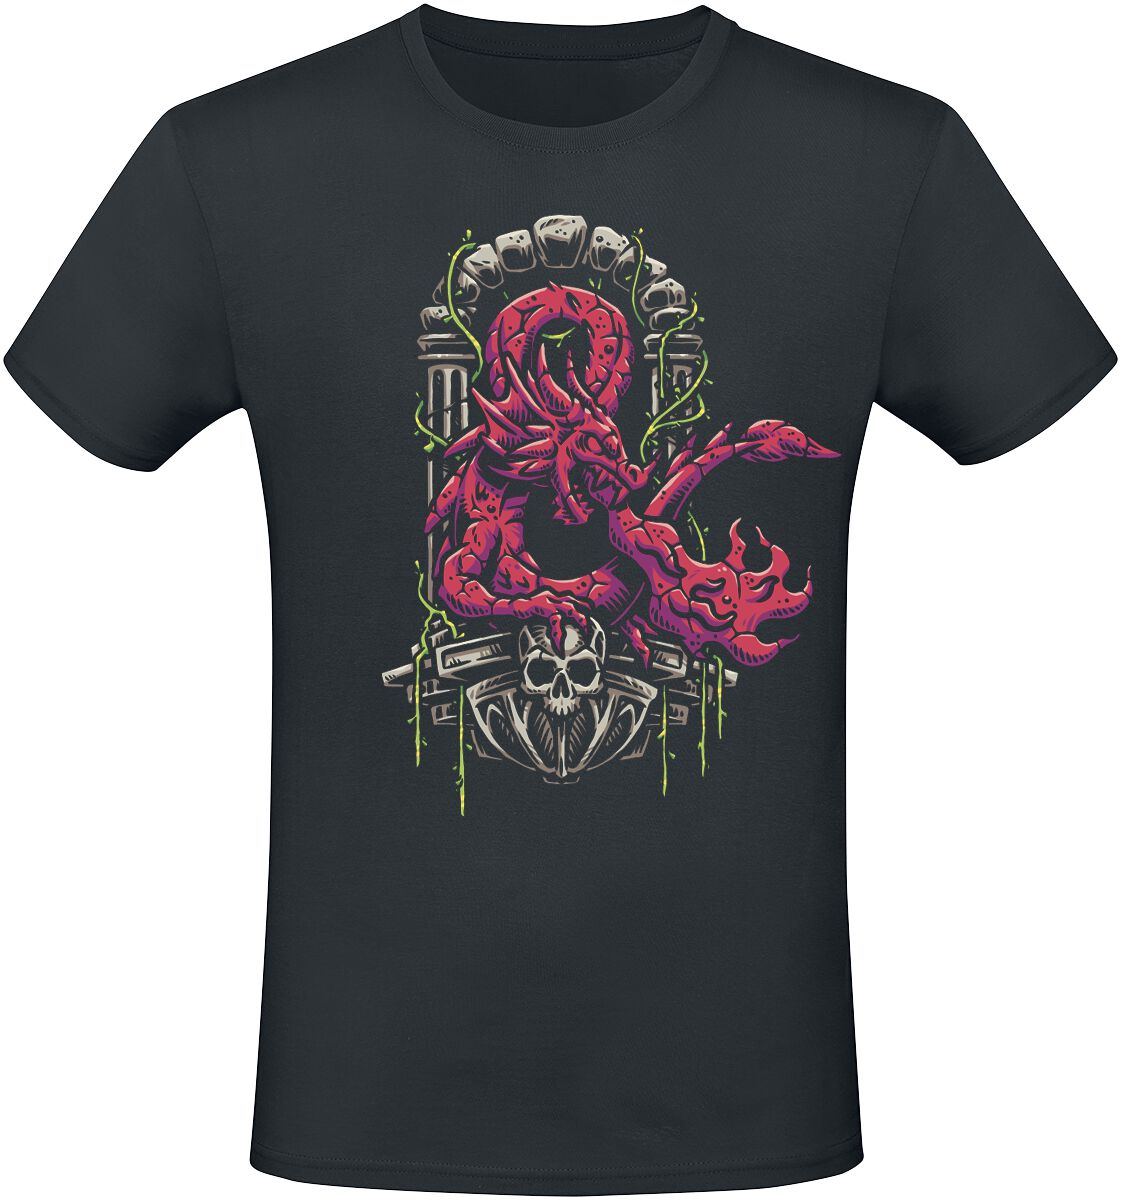 Dungeons and Dragons - Gaming T-Shirt - Ampersand Dragon - S bis XXL - für Männer - Größe XL - schwarz  - EMP exklusives Merchandise!